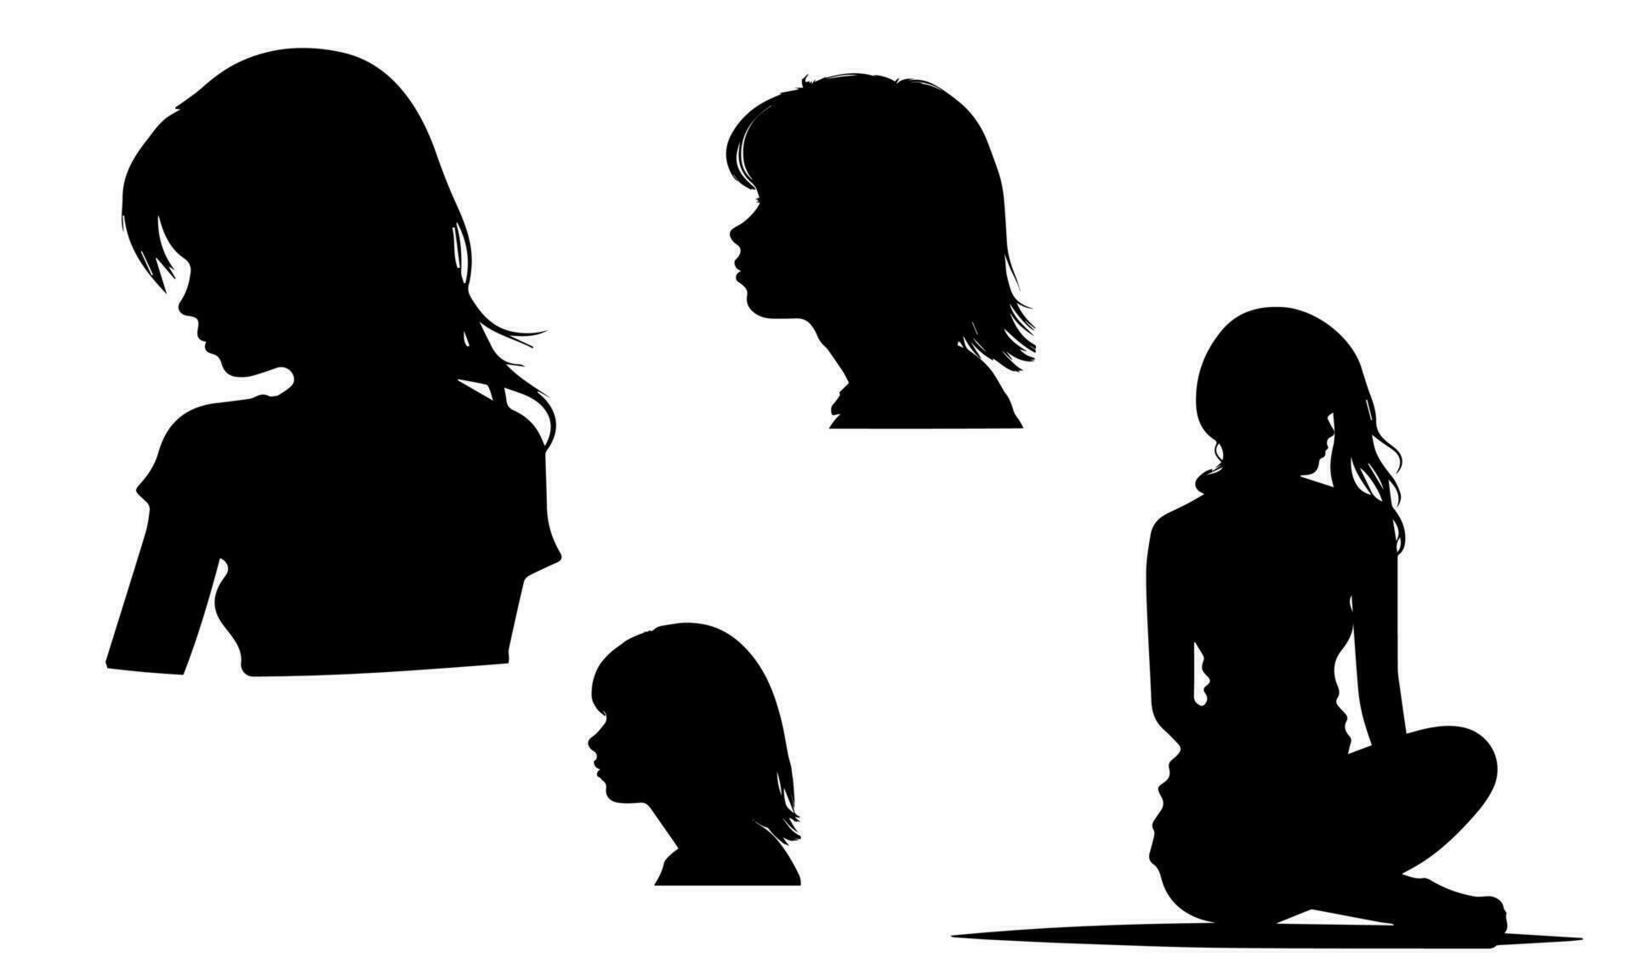 noir silhouette de les filles sur une blanc arrière-plan, les filles dans différent pose vecteur